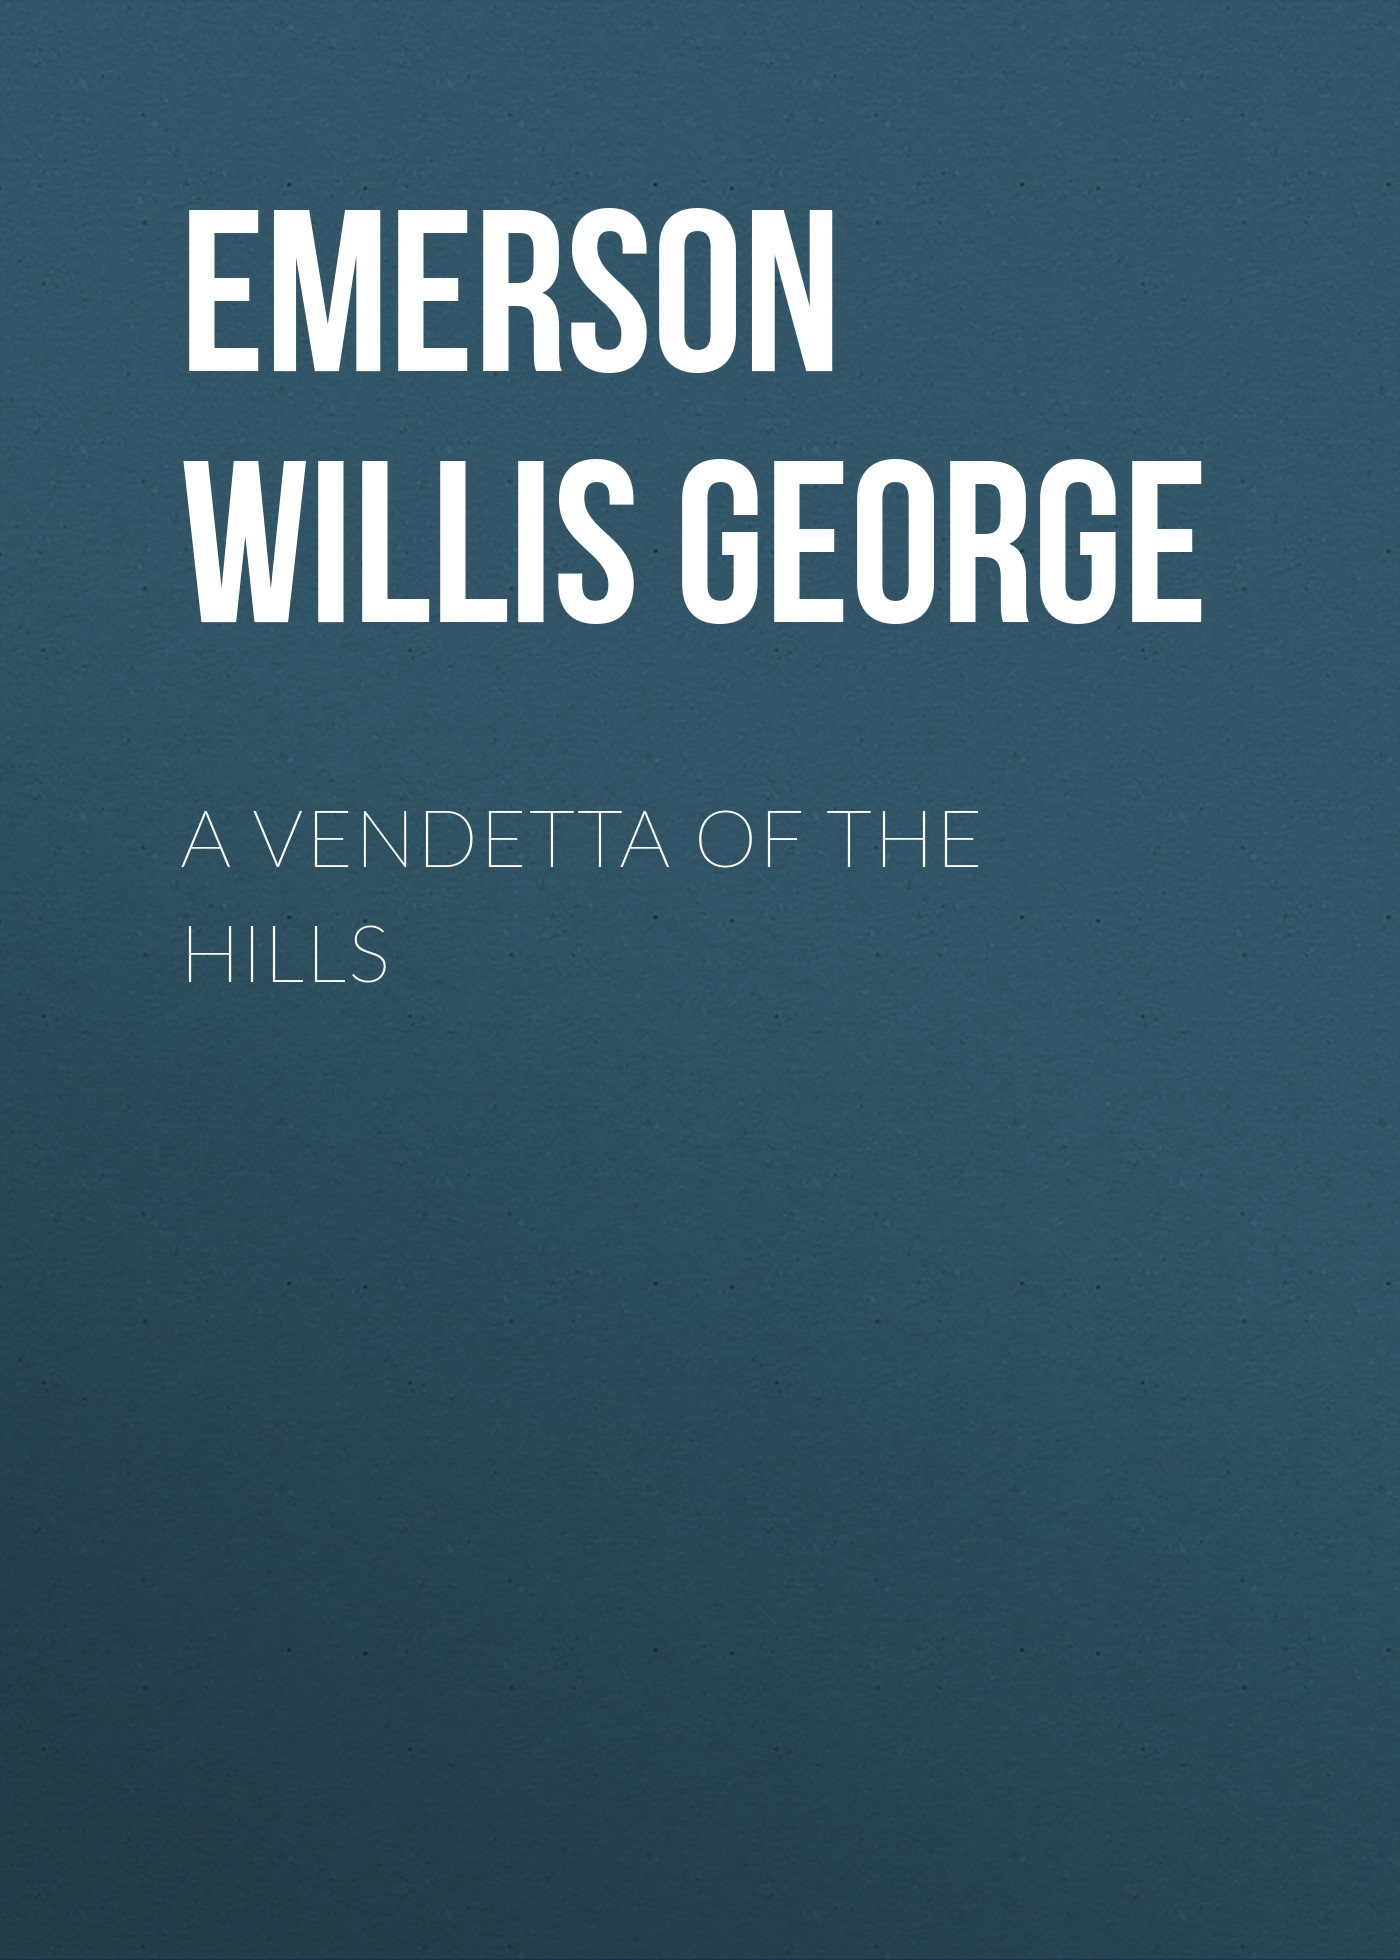 Книга A Vendetta of the Hills из серии , созданная Willis Emerson, может относится к жанру Зарубежная старинная литература, Зарубежная классика. Стоимость электронной книги A Vendetta of the Hills с идентификатором 24712937 составляет 0 руб.